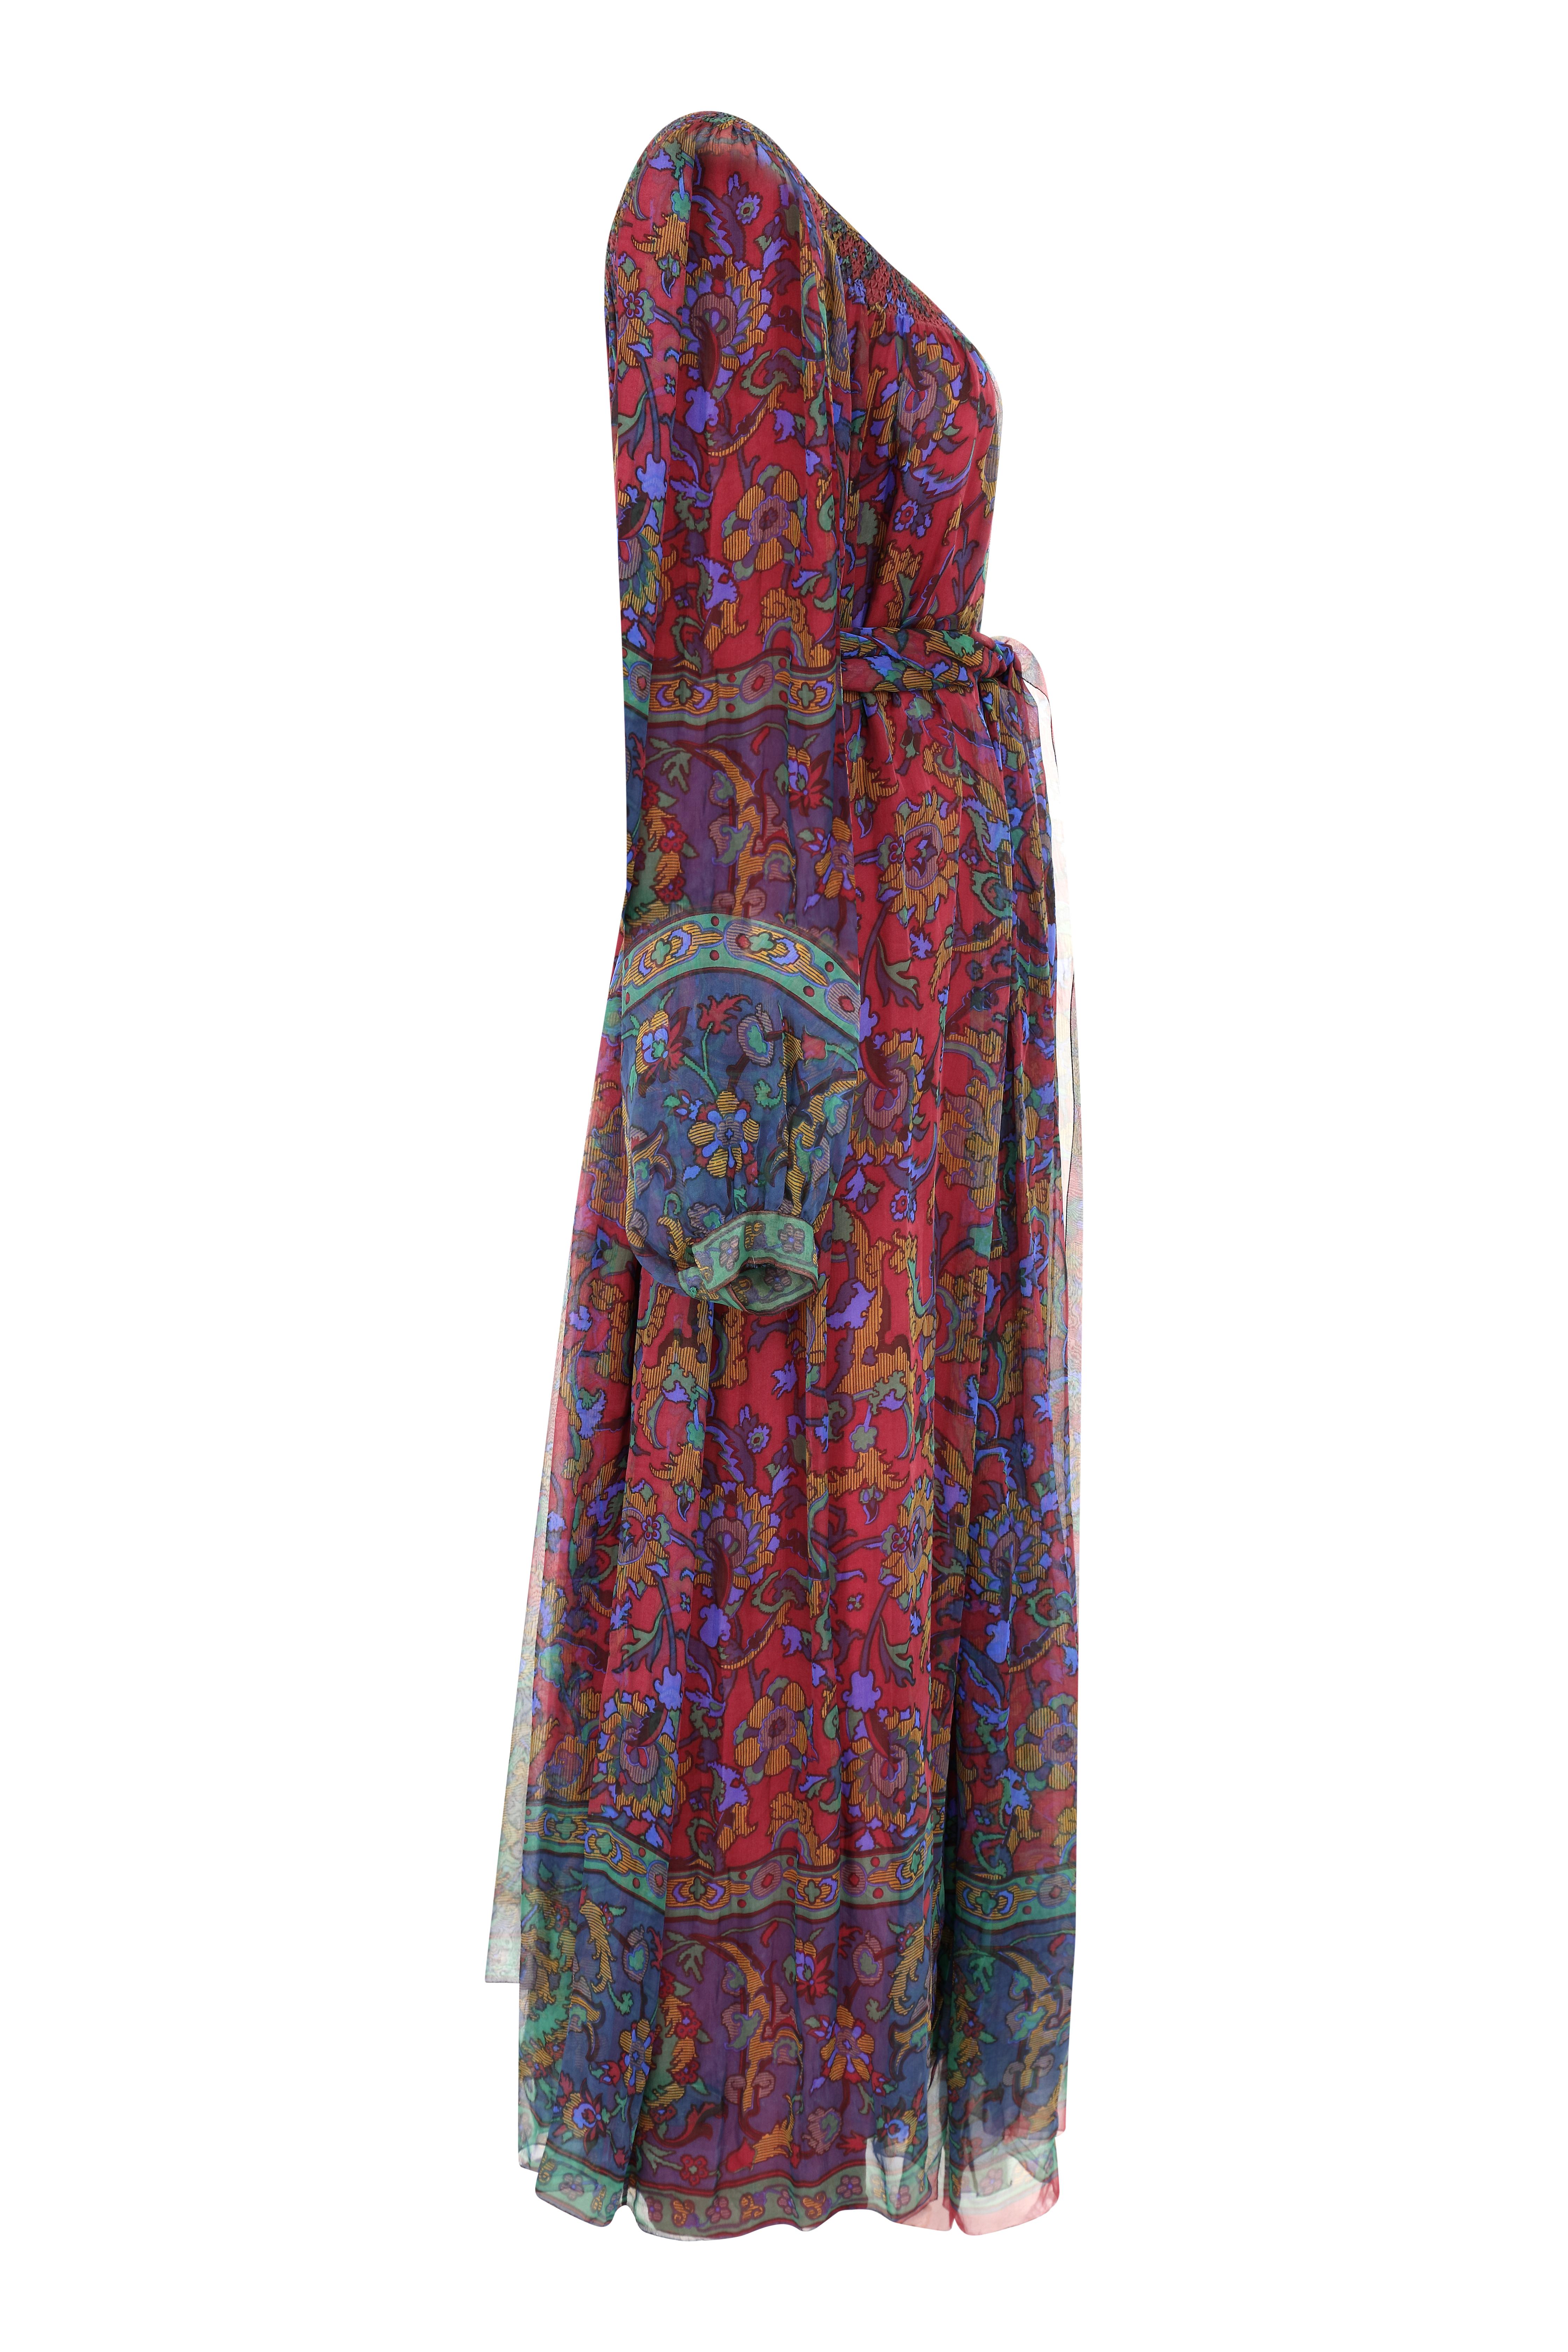 Superbe et rare robe en mousseline de soie bordeaux de Hanae Mori.  Cette robe date de la fin des années 1970 ou du début des années 1980 et a appartenu à l'épouse d'un ambassadeur. Le motif est un subtil imprimé floral dans un ton riche et chaud de